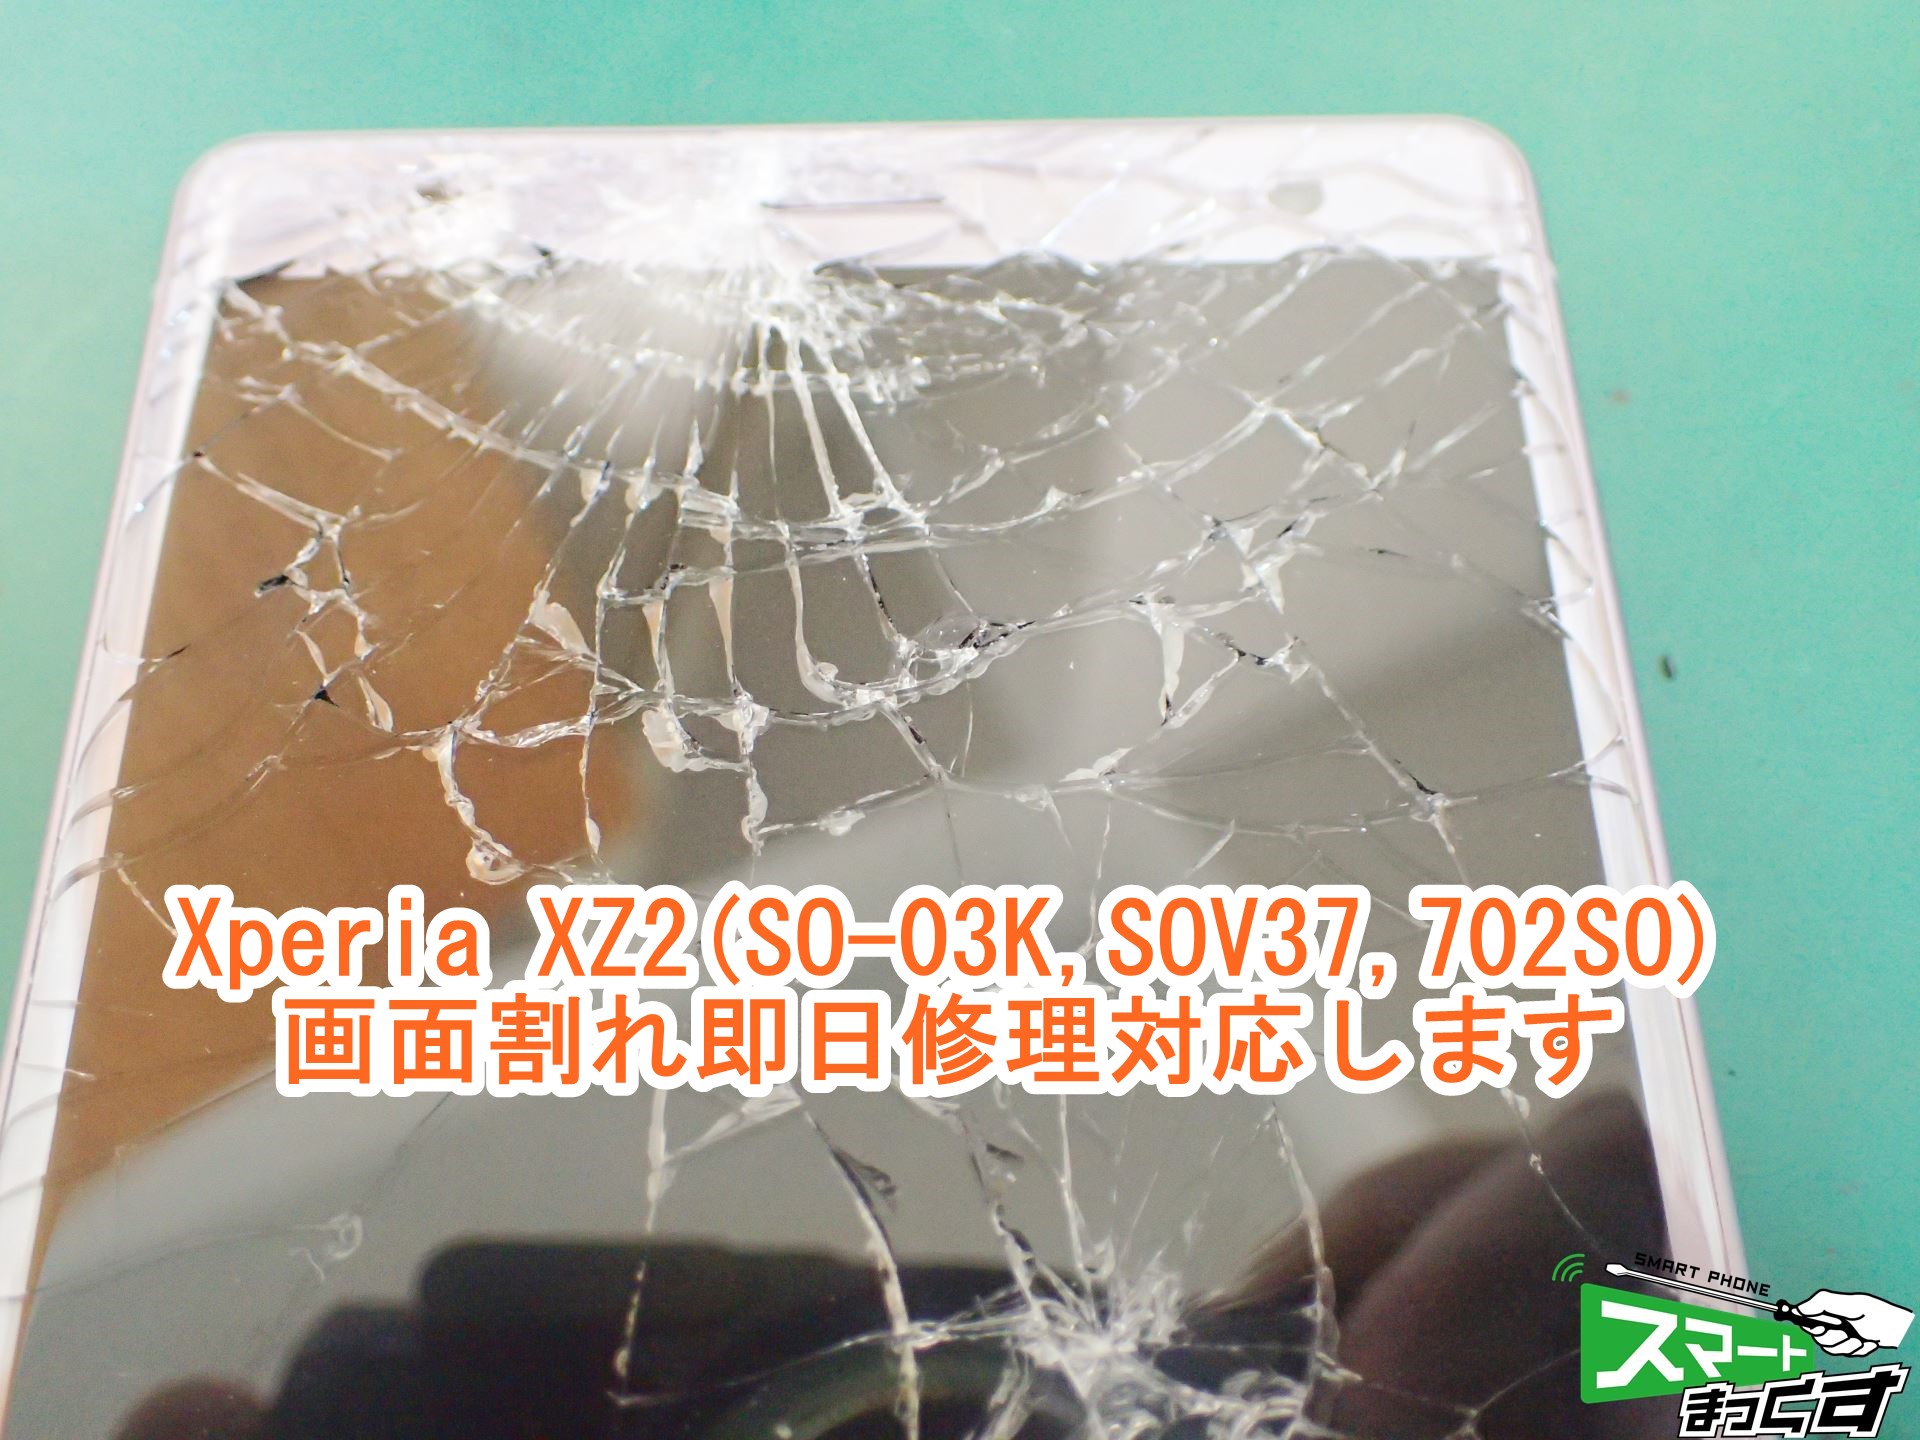 即日修理 Xperia Xz2 画面破損 液晶不良修理 写真付きで修理解説 東京 大阪 滋賀のスマートフォン修理 スマートまっくす 全国対応